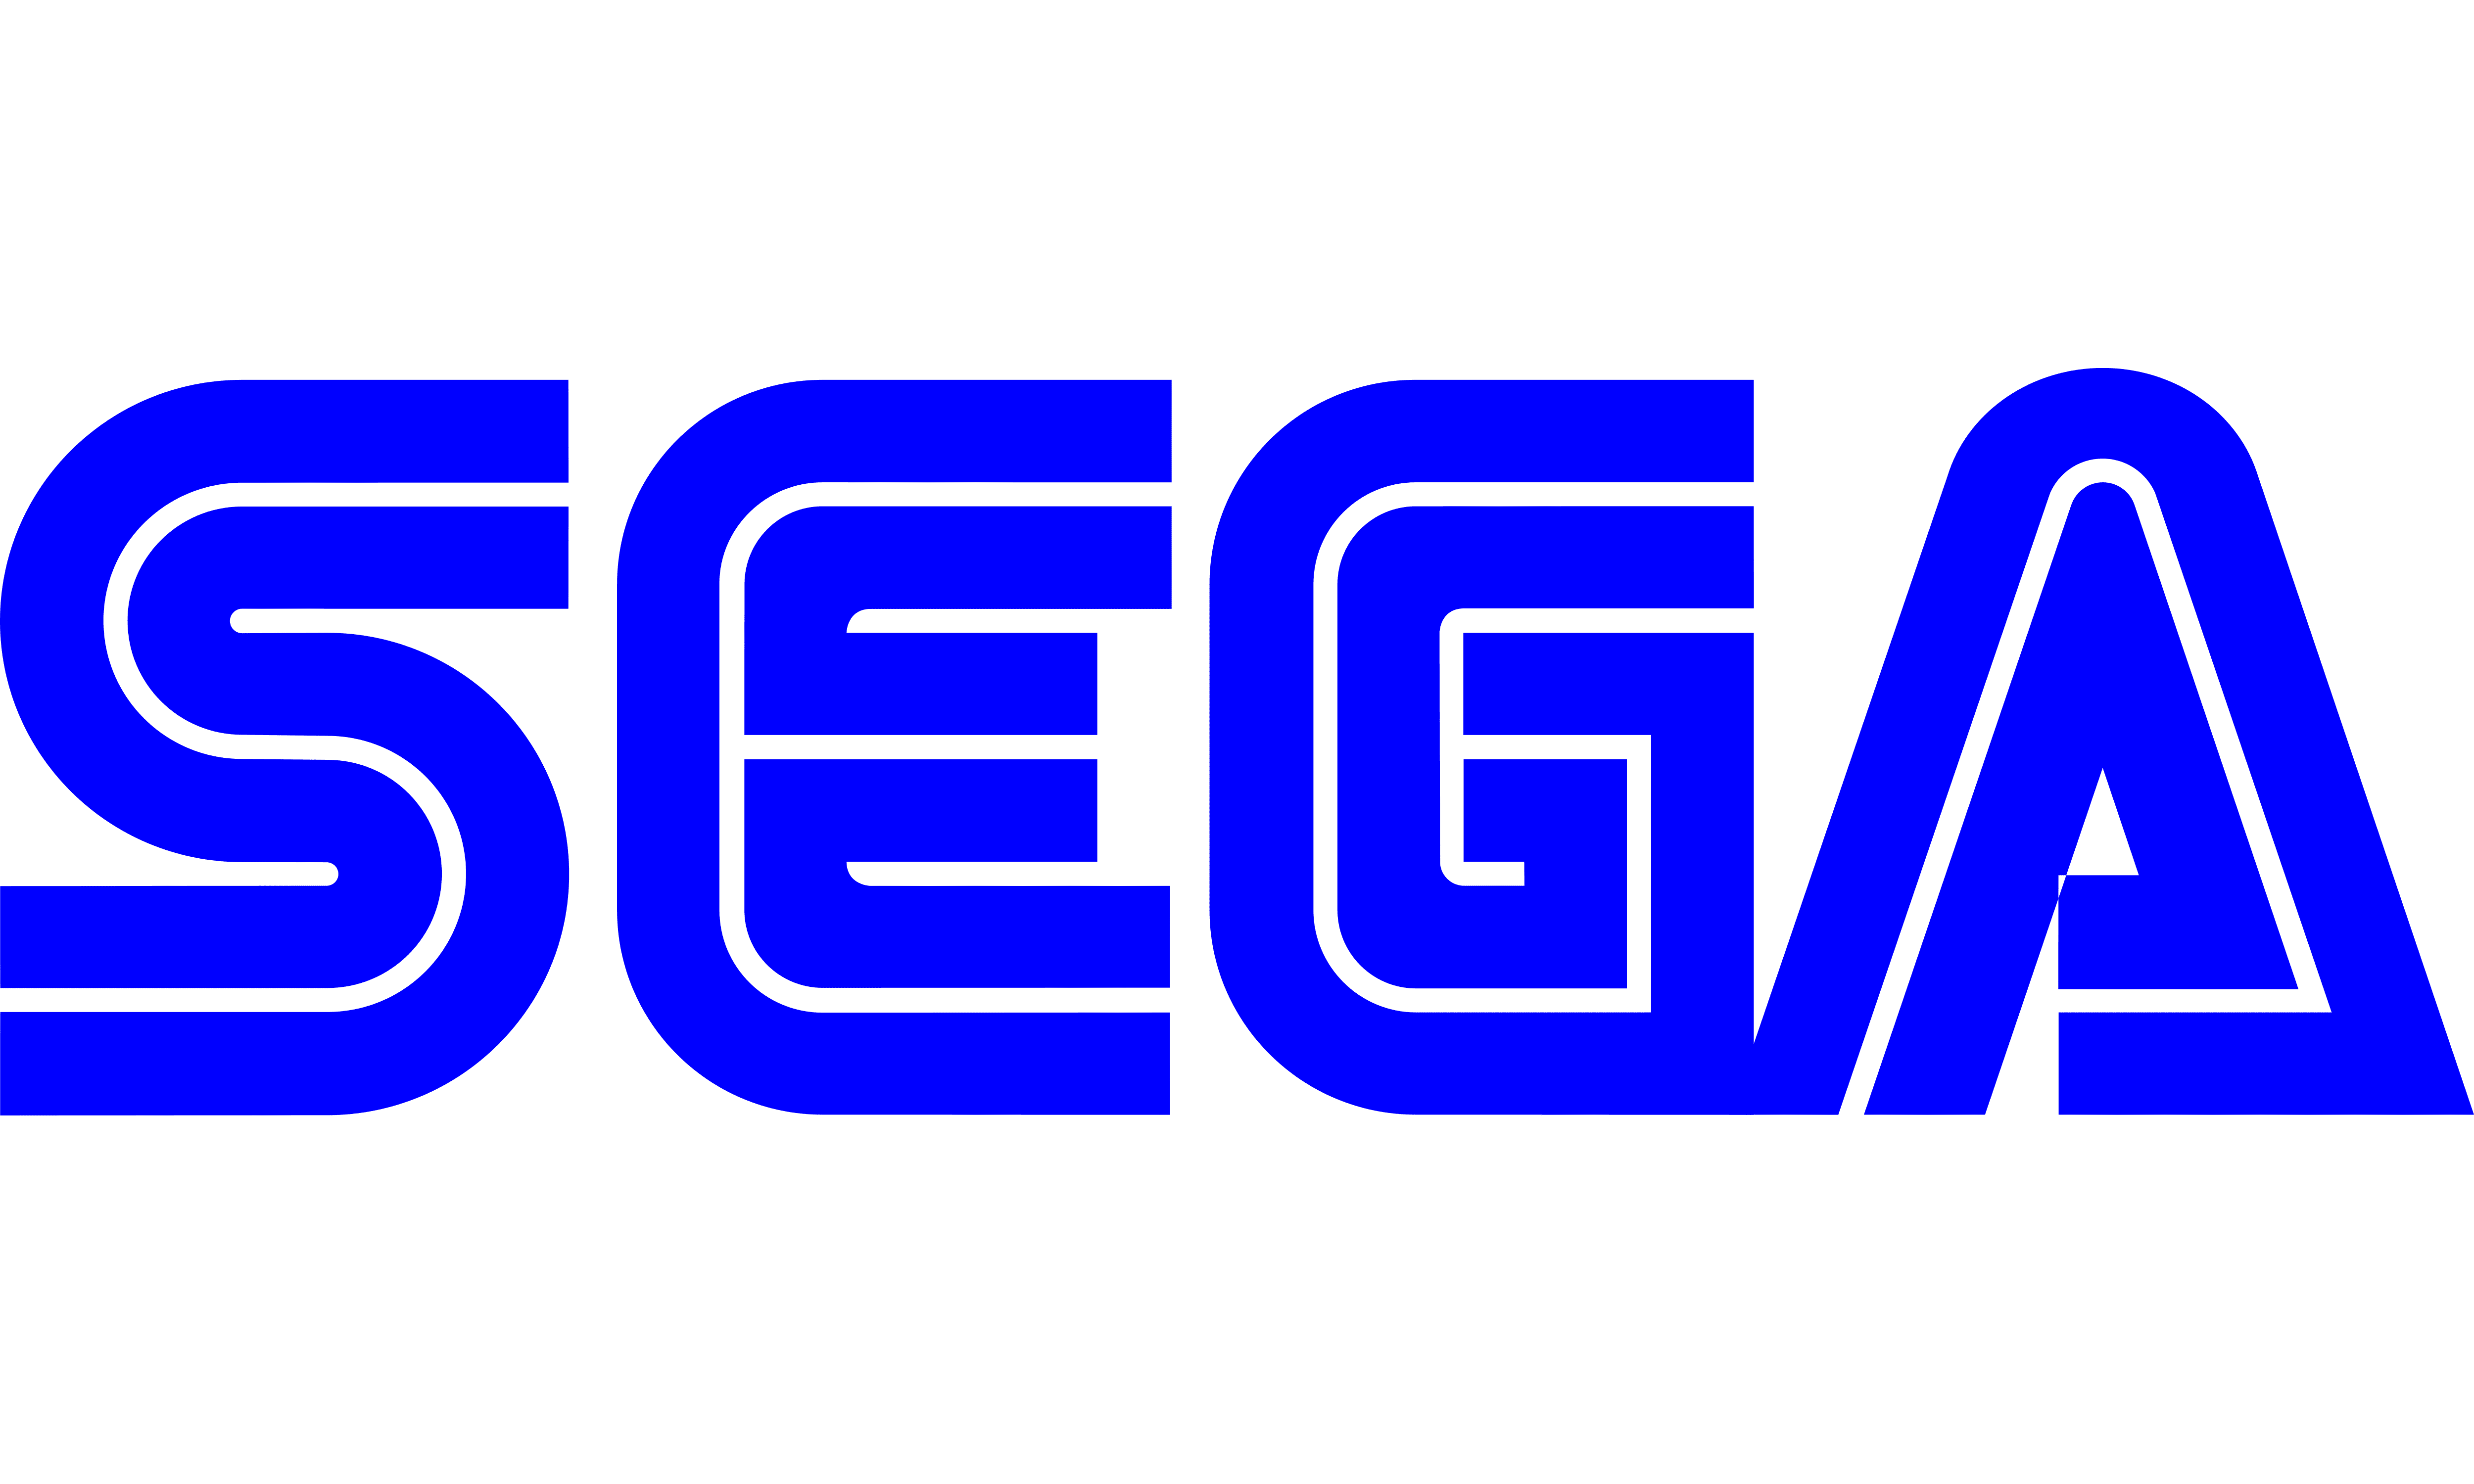 Sega-logo